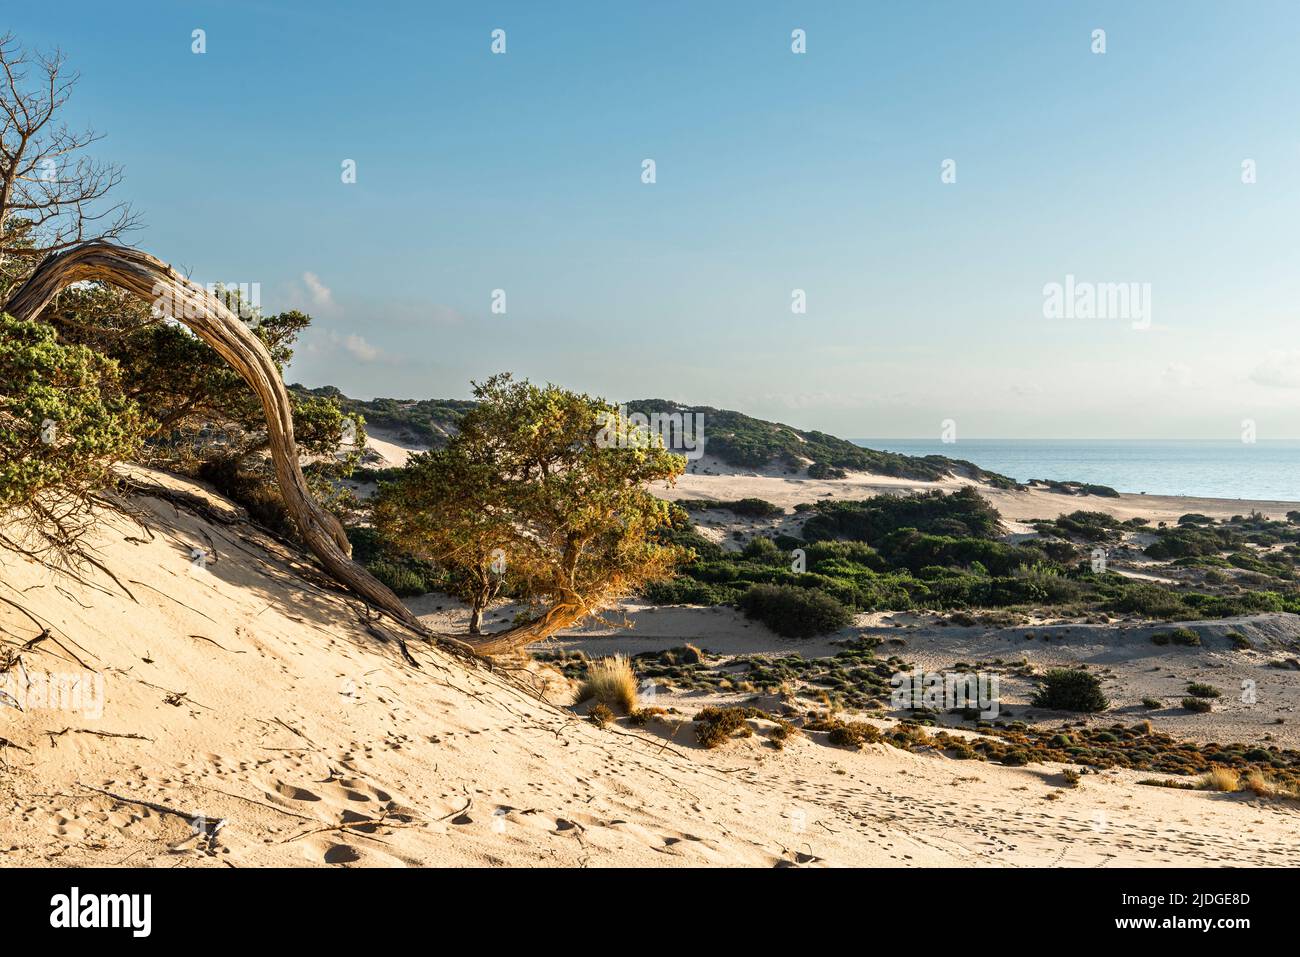 Albero di Juniper con rami curvati e districati nella sabbia delle dune sulla spiaggia di Piscinas, Costa Verde nel caldo sole della sera, Sardegna, Italia Foto Stock